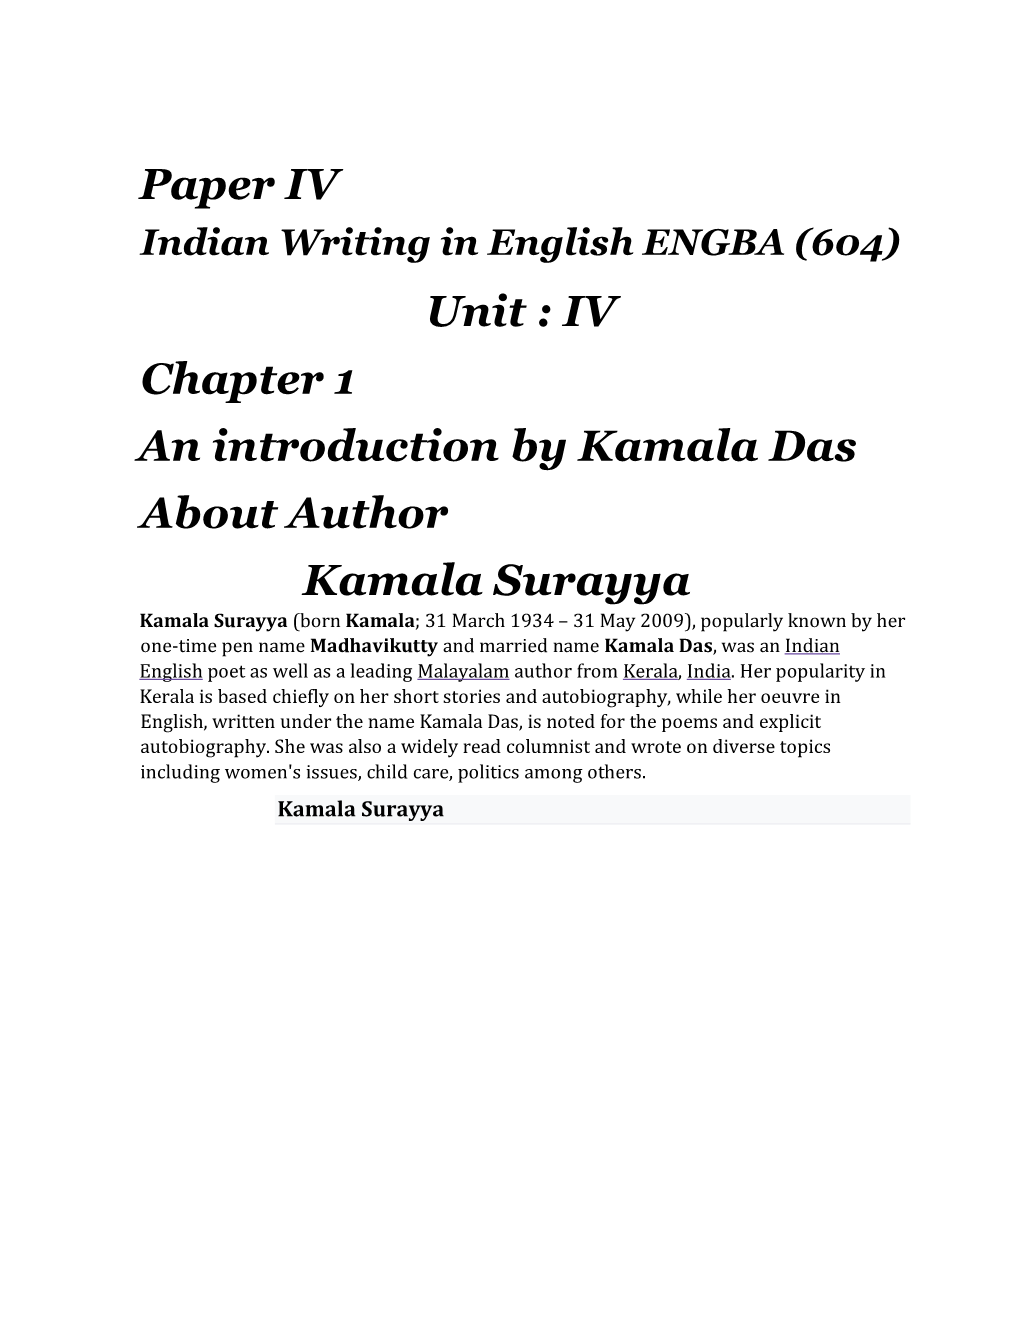 Paper IV Unit : IV Chapter 1 an Introduction by Kamala Das About Author Kamala Surayya